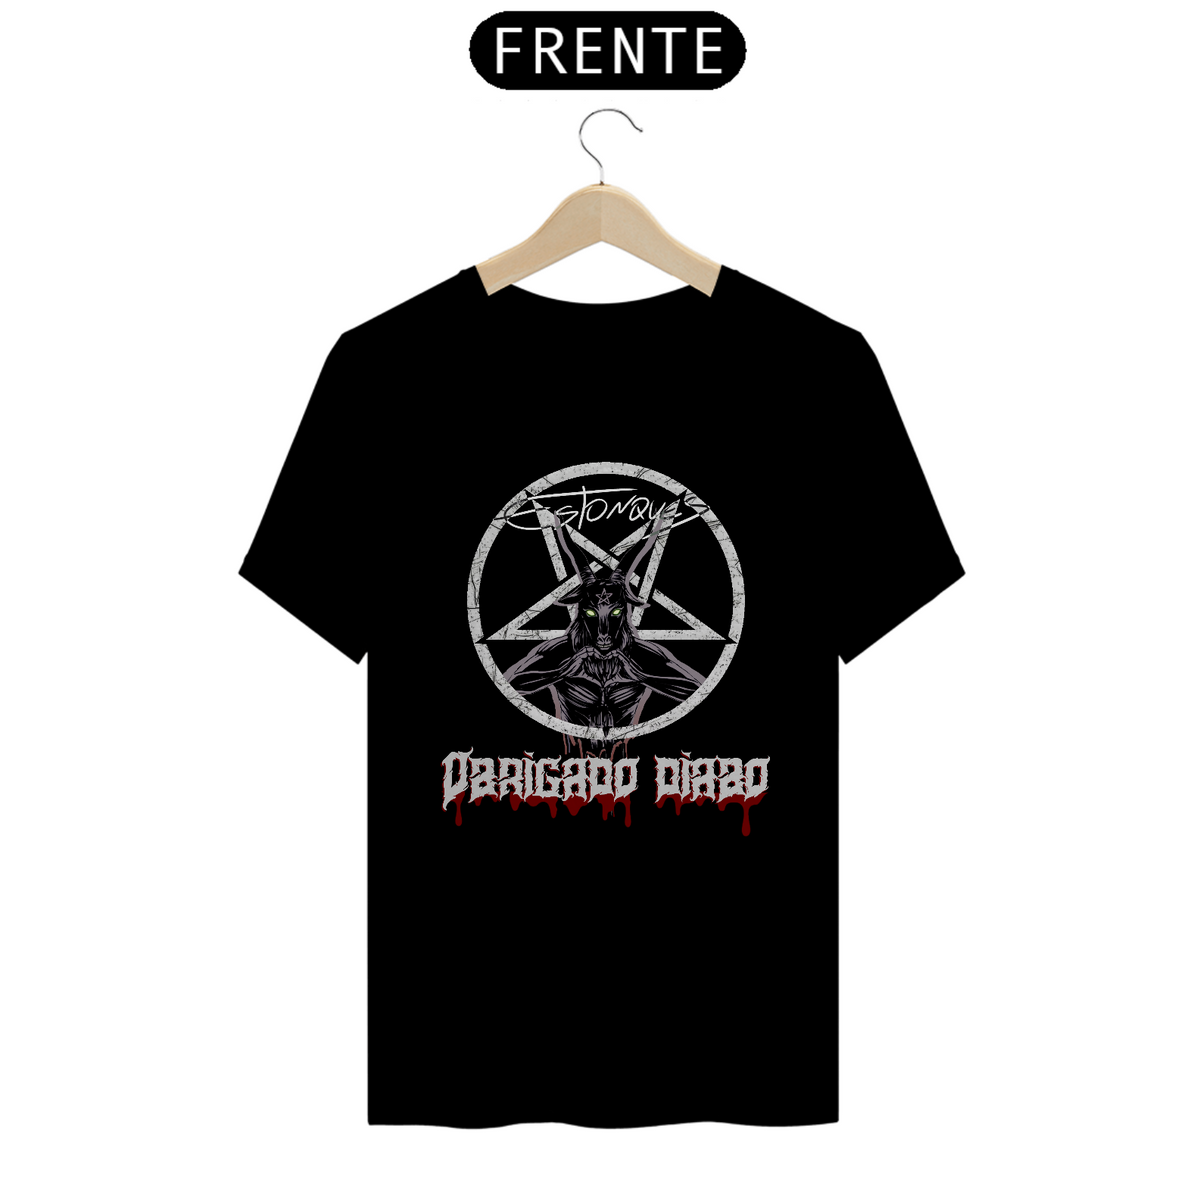 Nome do produto: Camiseta Obrigado Diabo